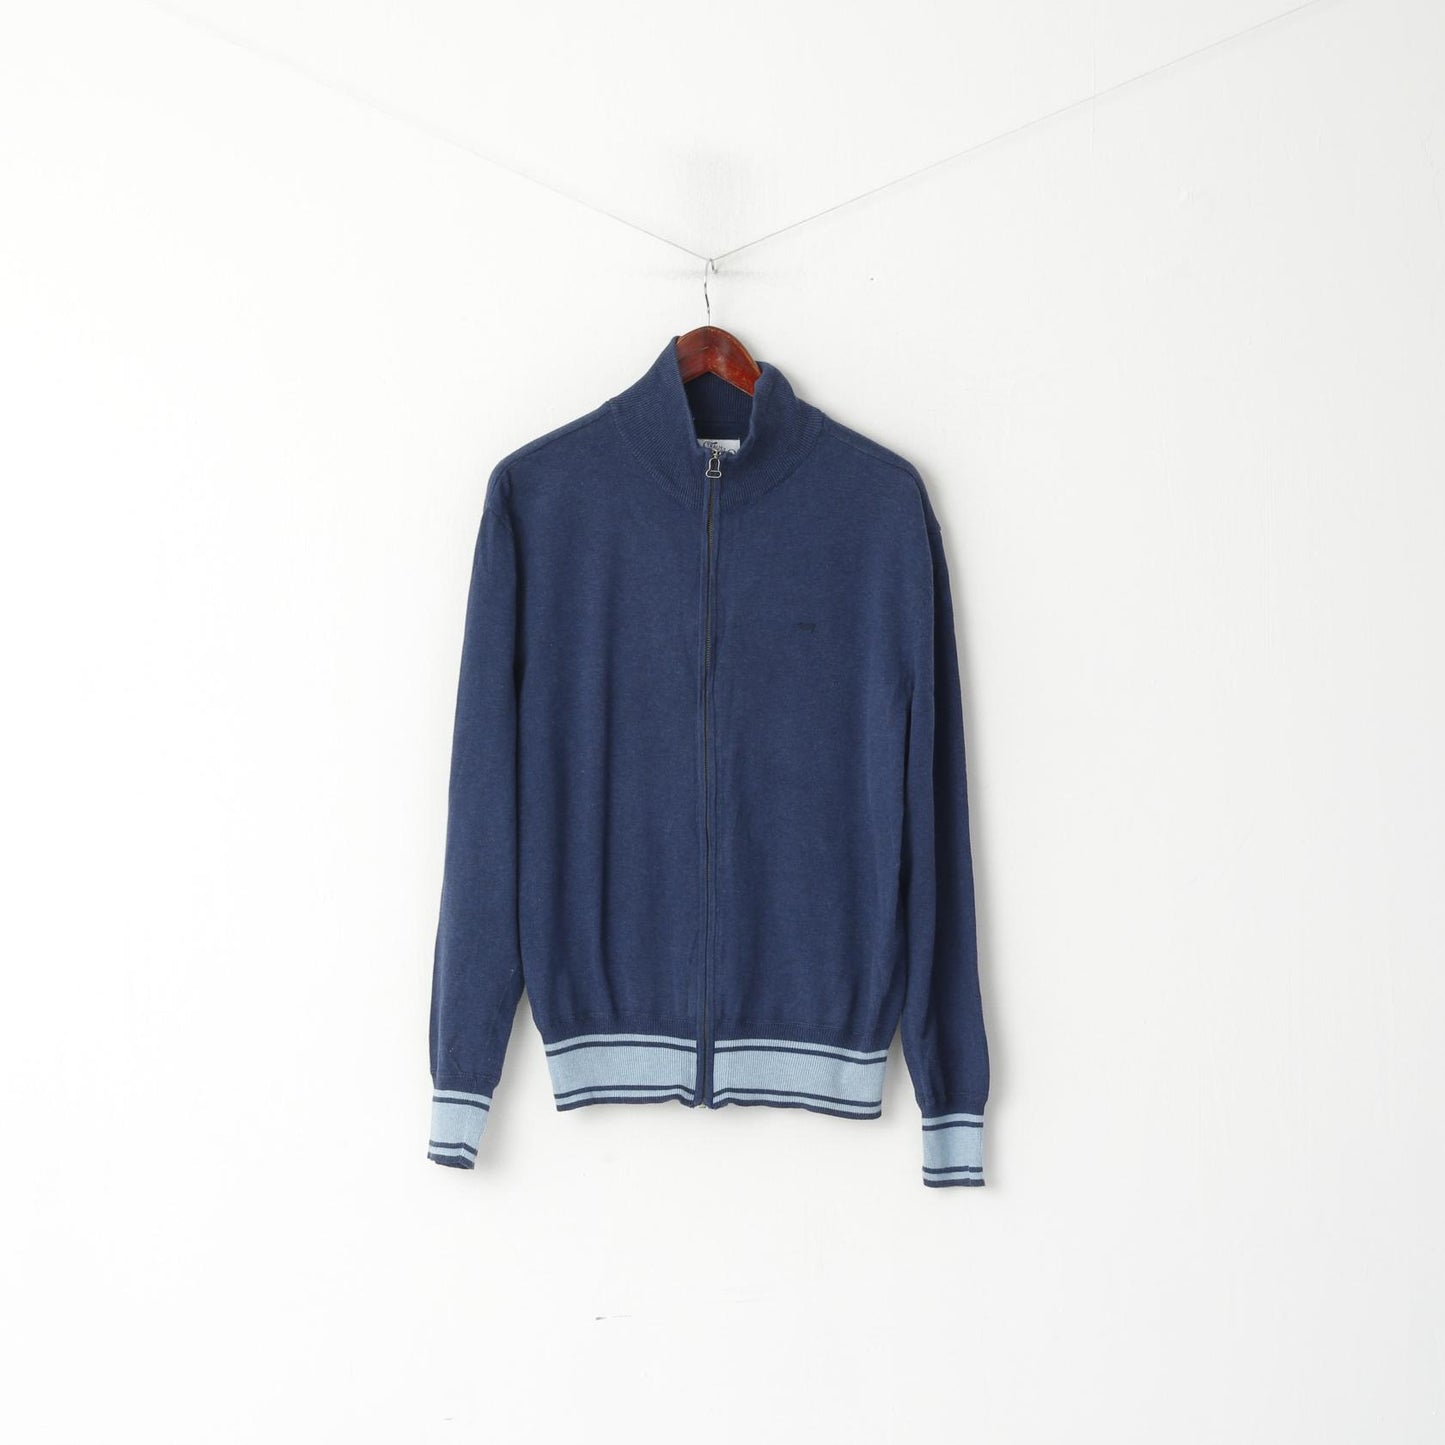 Levi's Men XL (L) Jumper Navy Cotton Knit Full Zipper Lightweight Soft Sweater